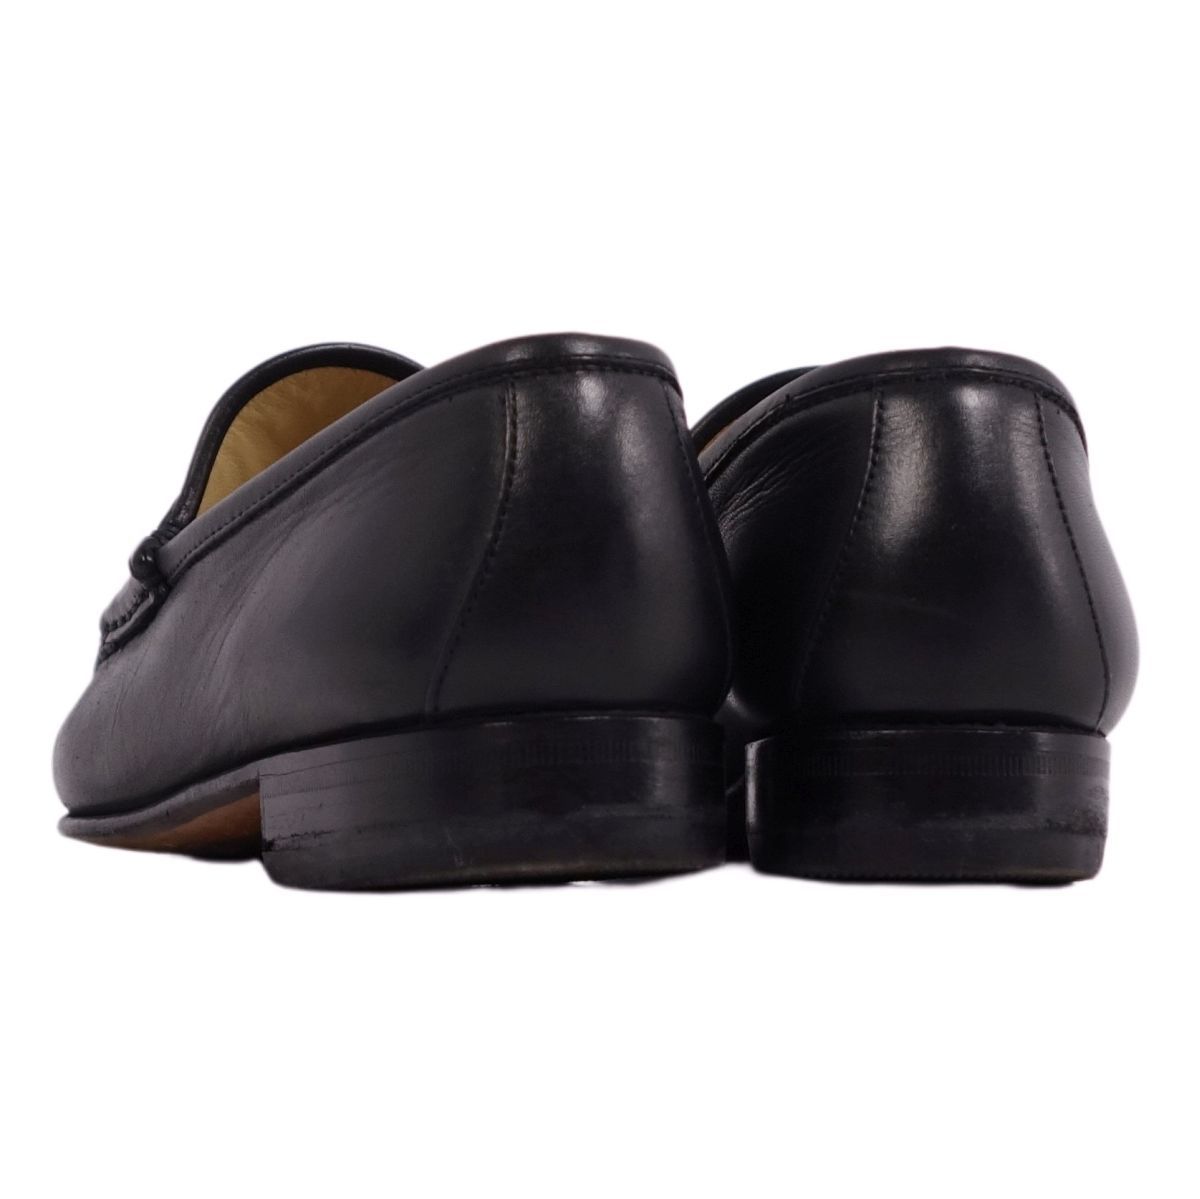 Vintage グッチ GUCCI ローファー モカシン ホースビット カーフレザー シューズ 靴 レディース イタリア製 35.5 黒 cg11dt-rm04c14011_画像5